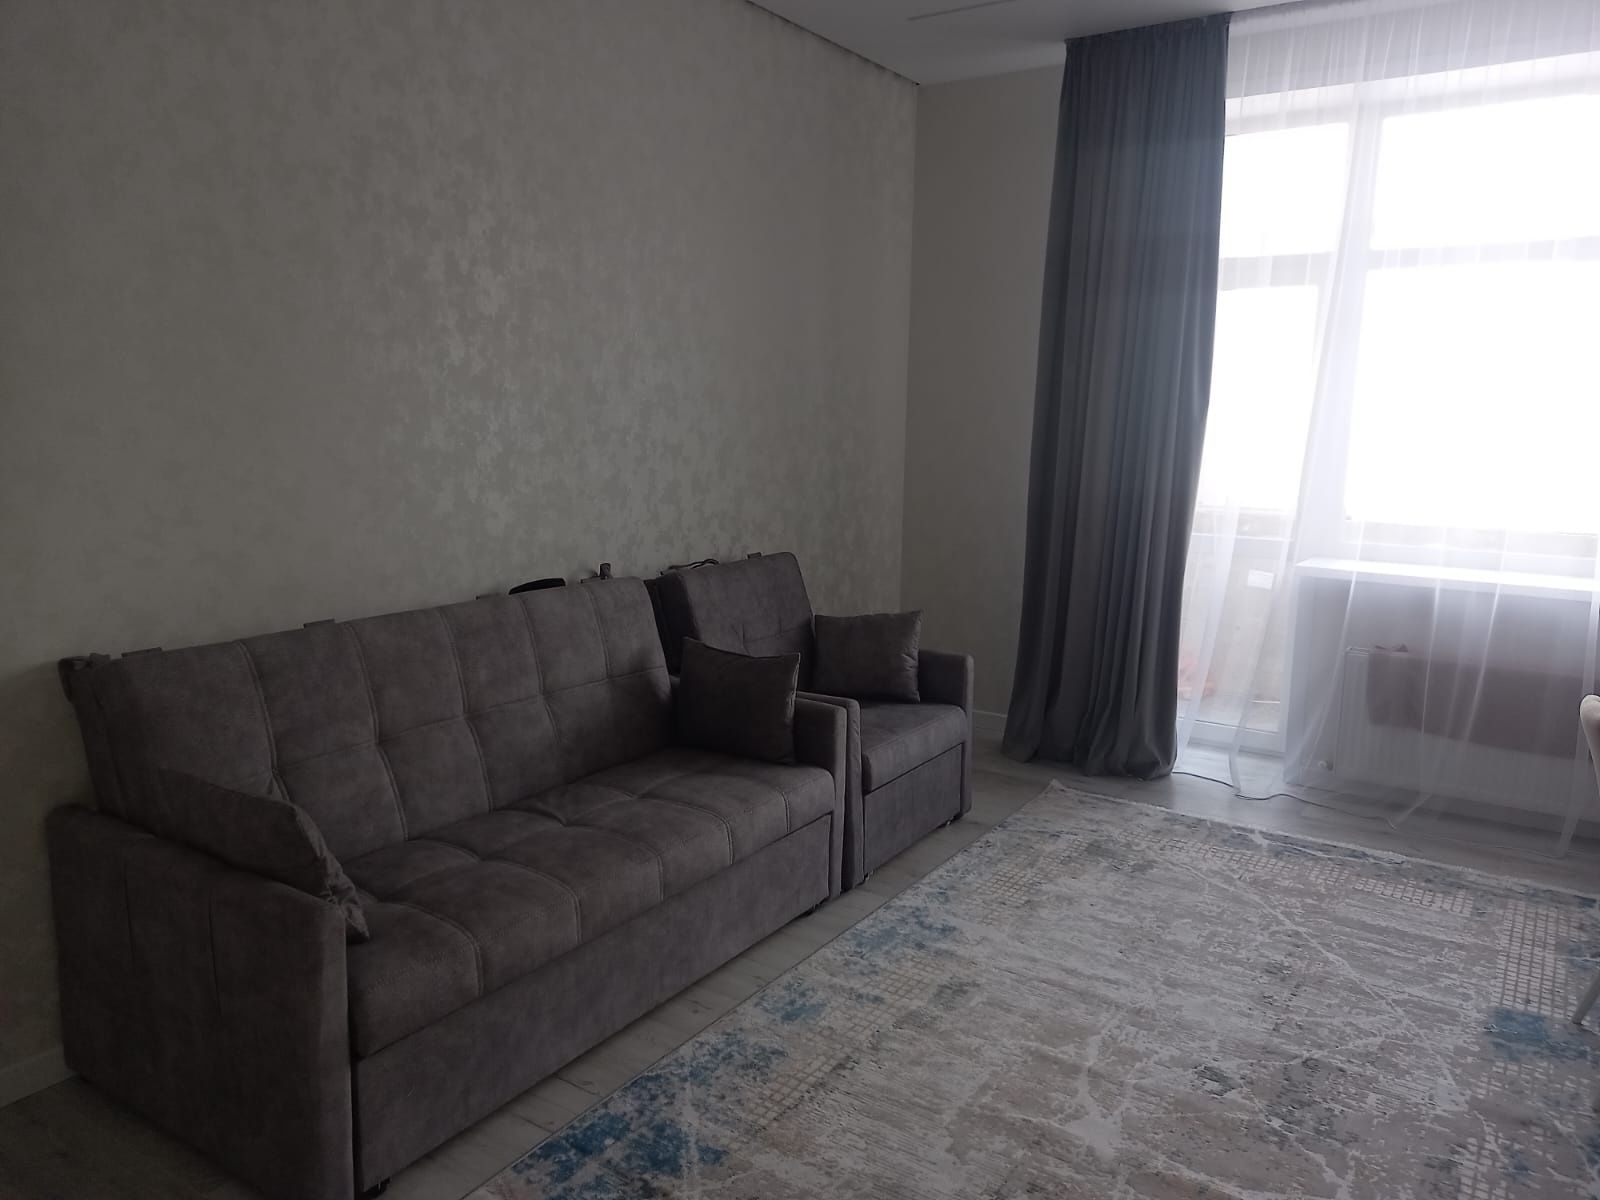 Сдам квартиру 1 комнатную квартиру вГ.Астана